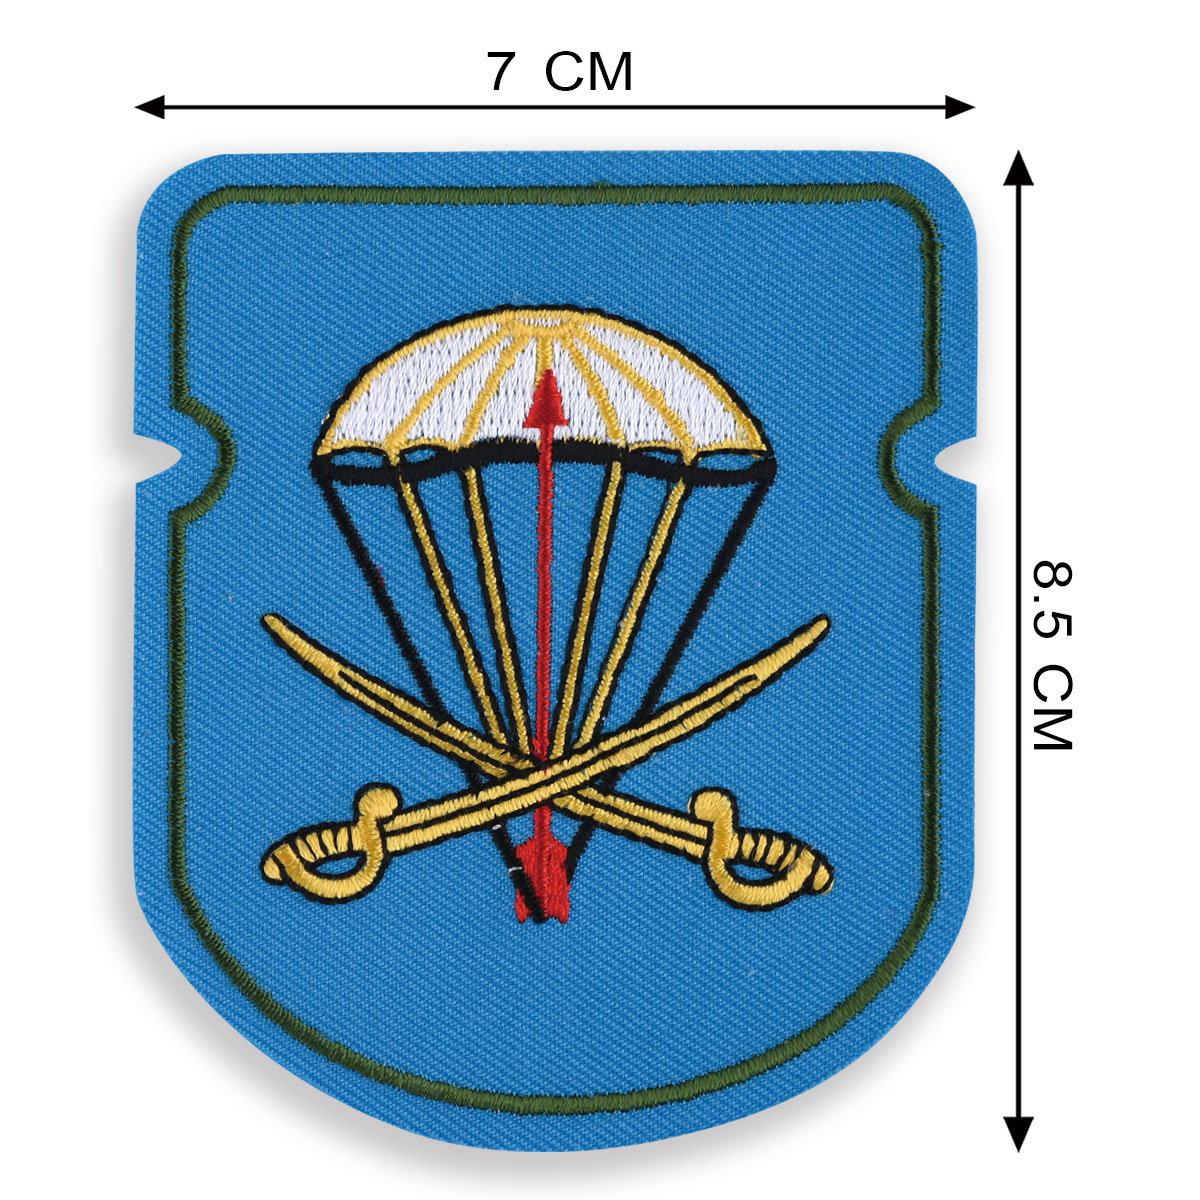 Нарукавный знак ВДВ "91 отдельный десантно-штурмовой батальон" 